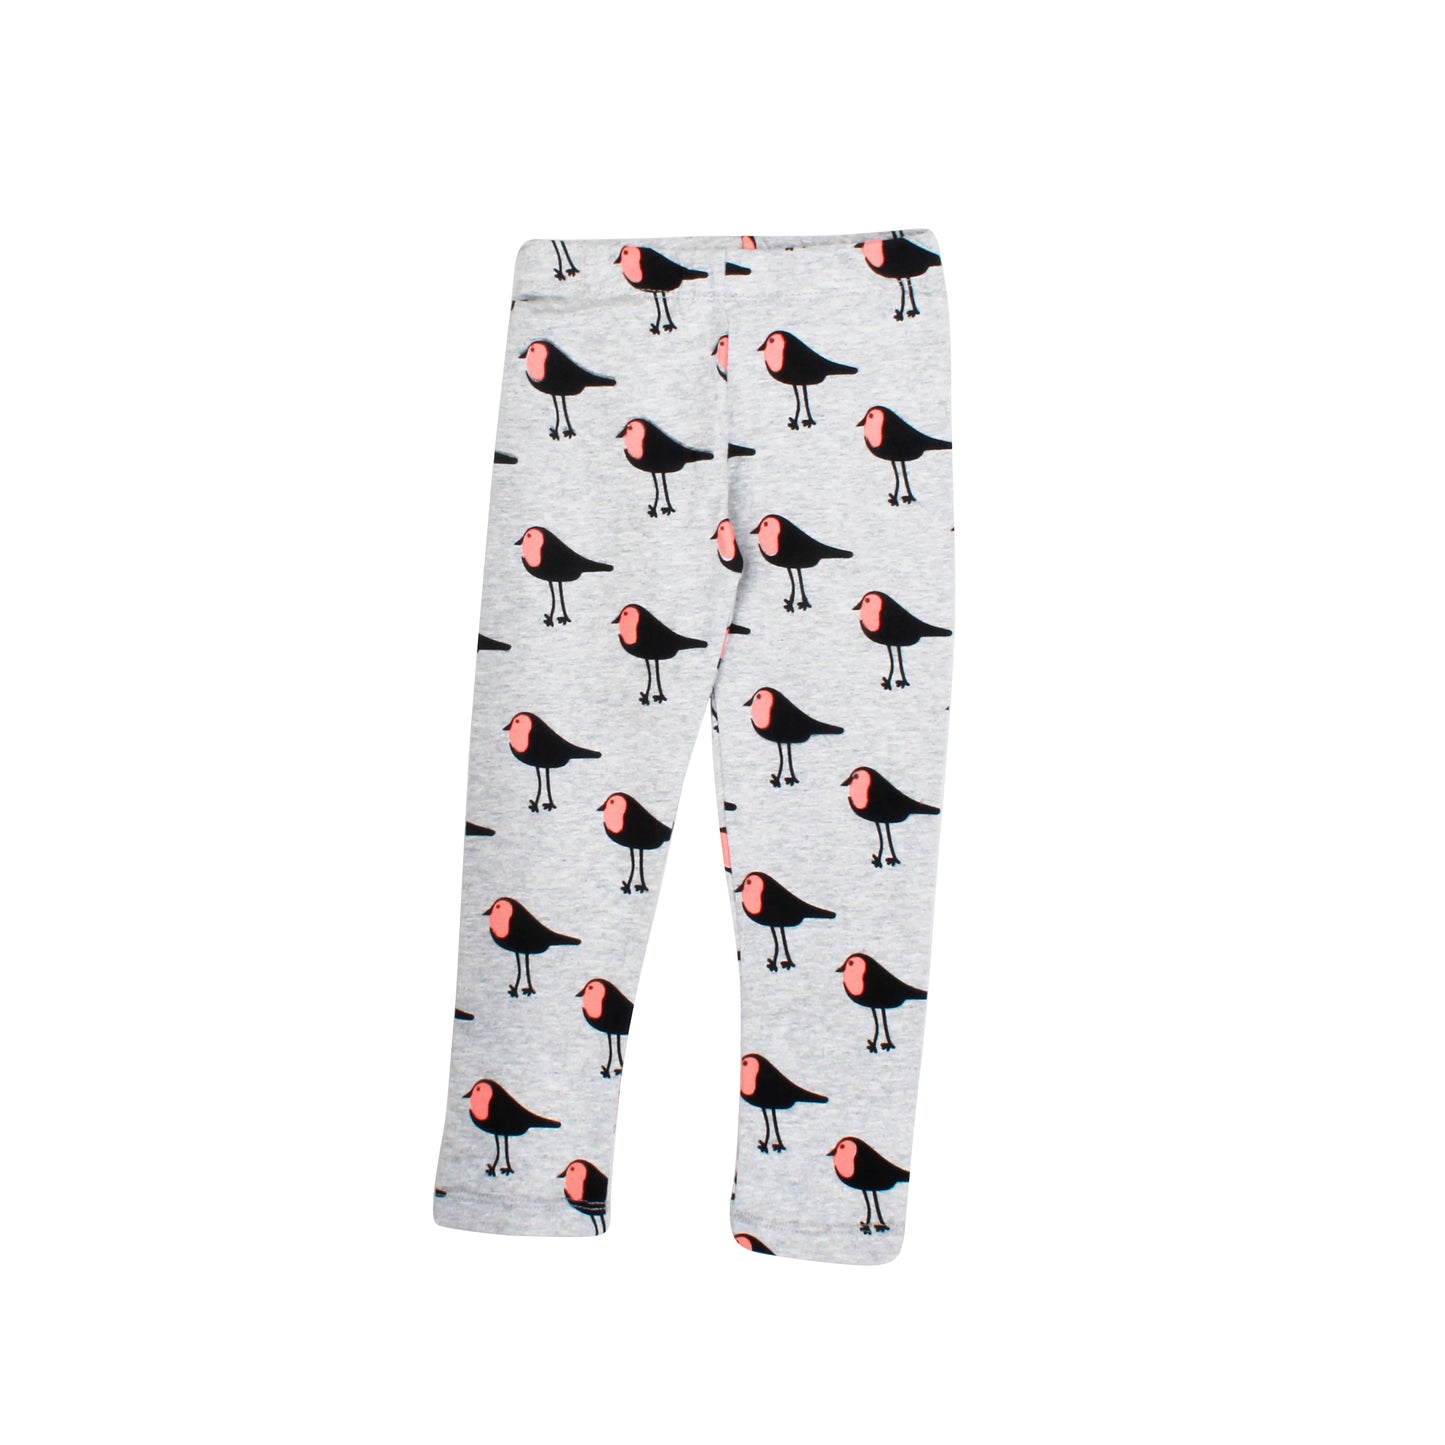 Bird Printed Pyjamas for Kids